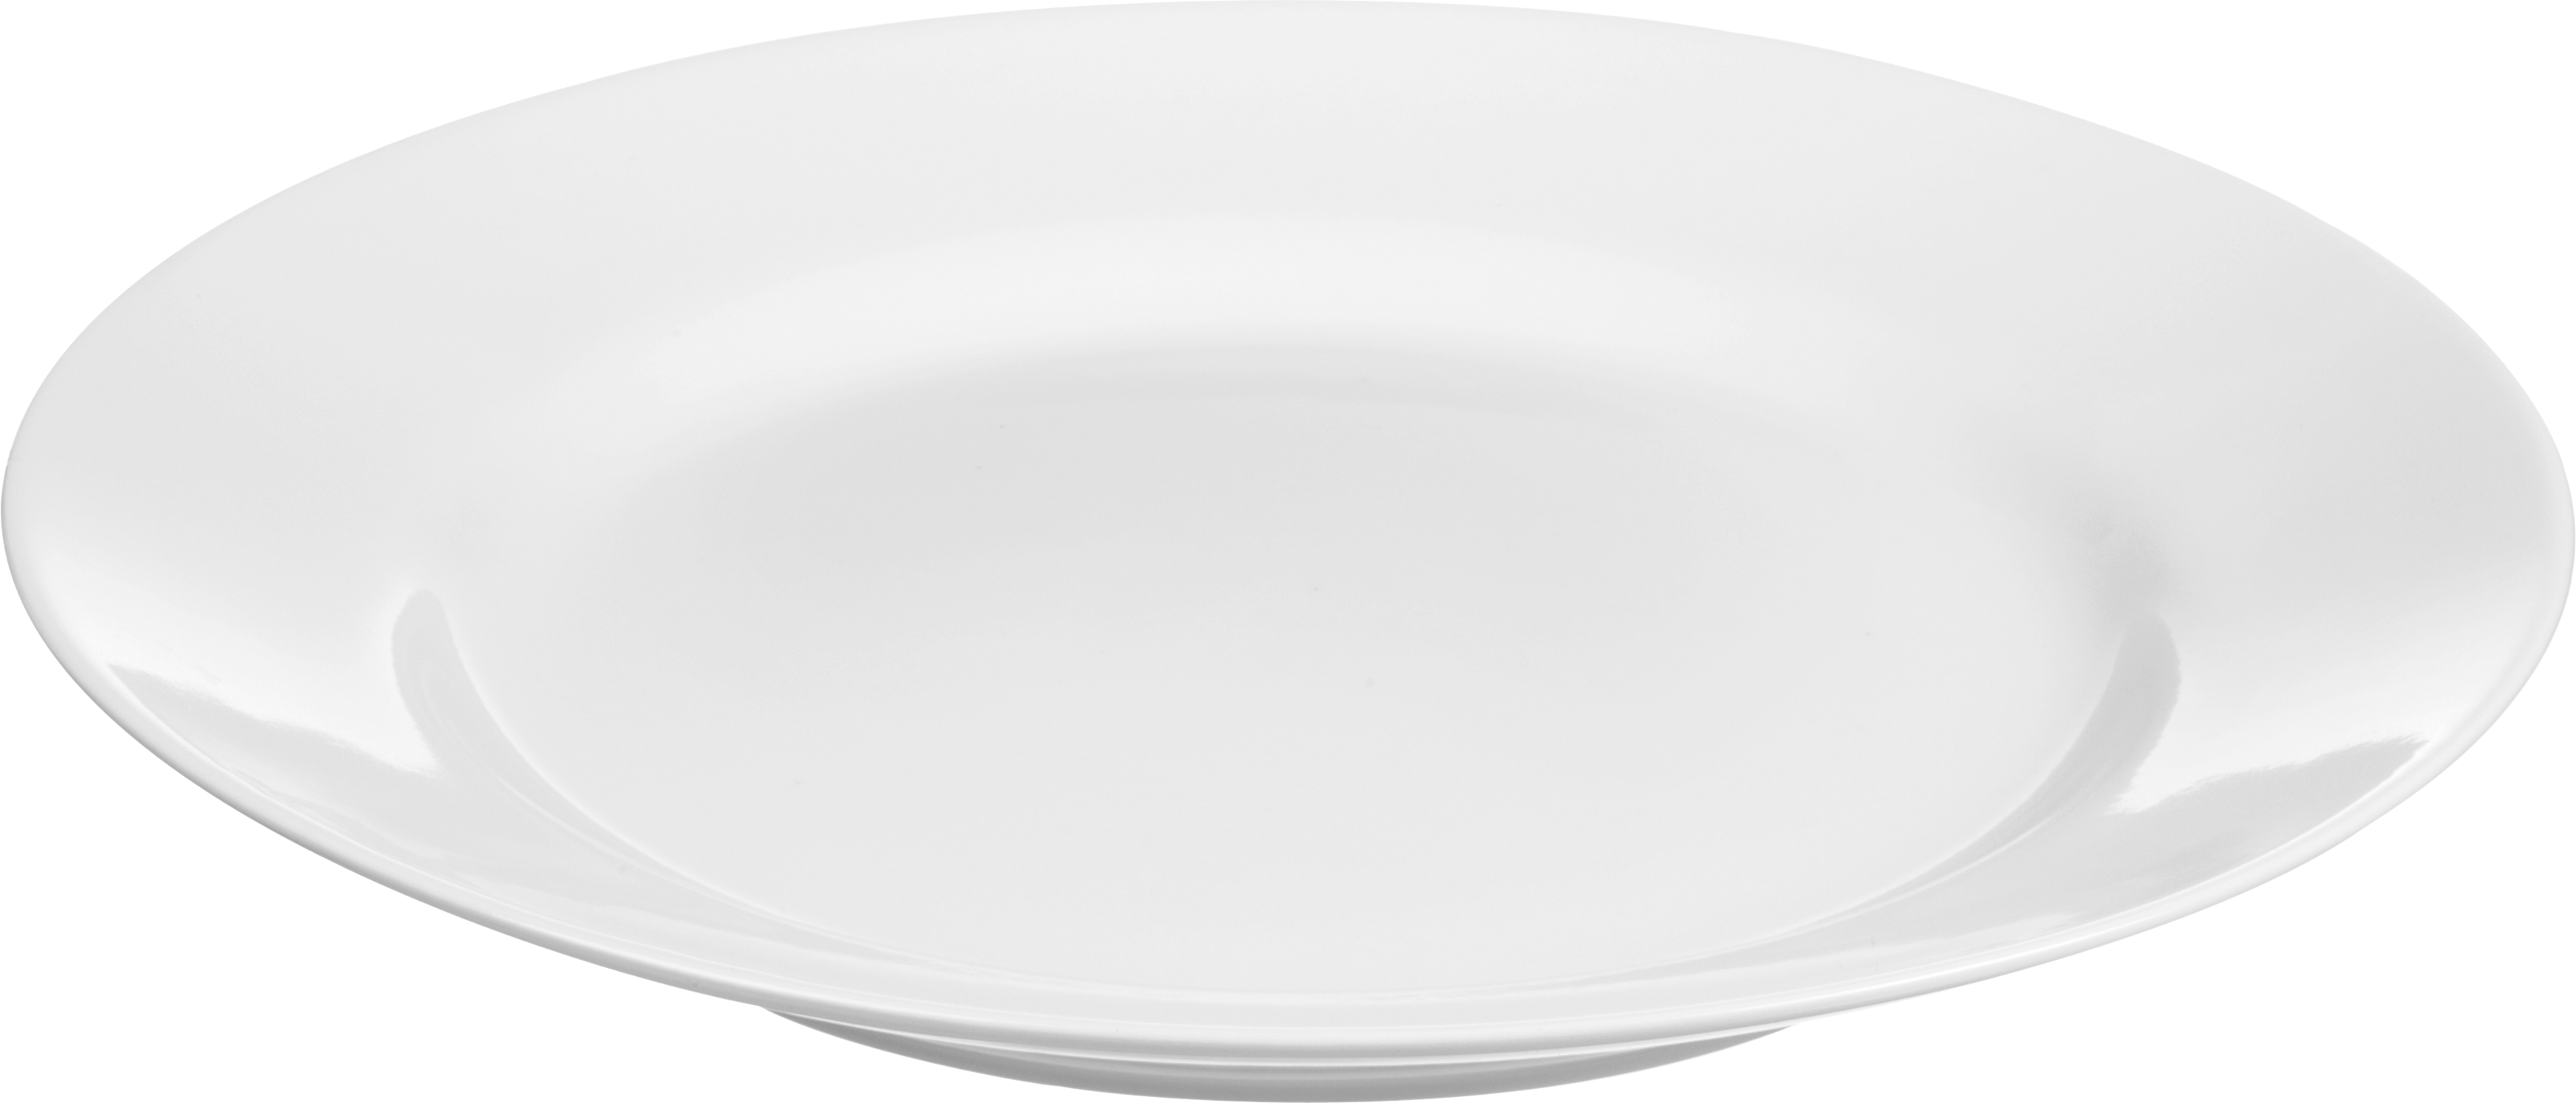 白陶瓷碟子